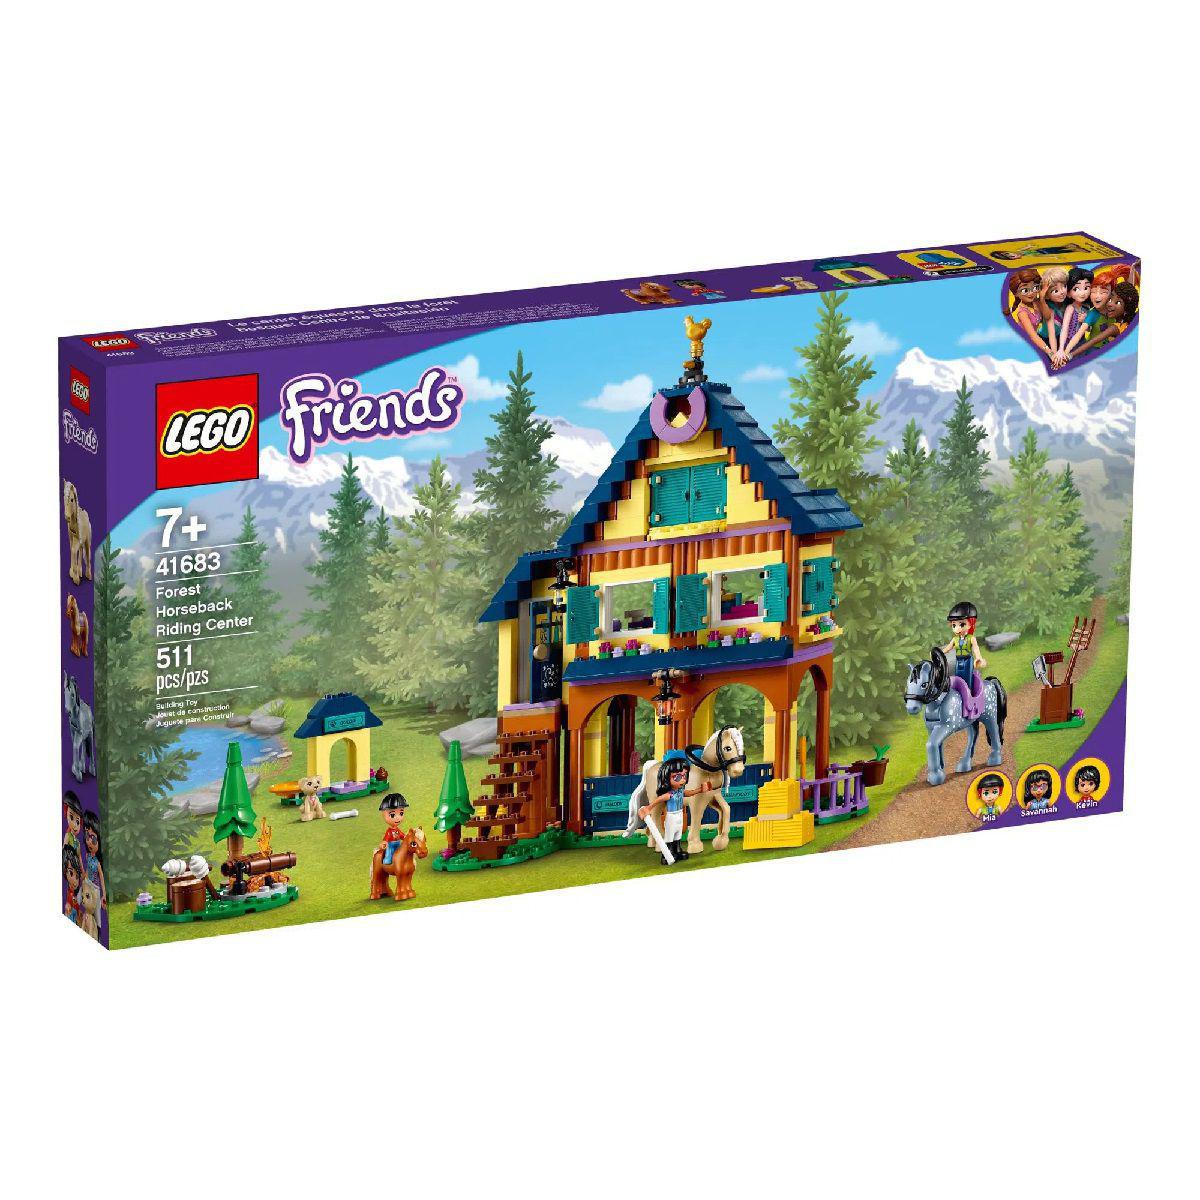 O Centro Hípico Da Floresta - Lego 1683